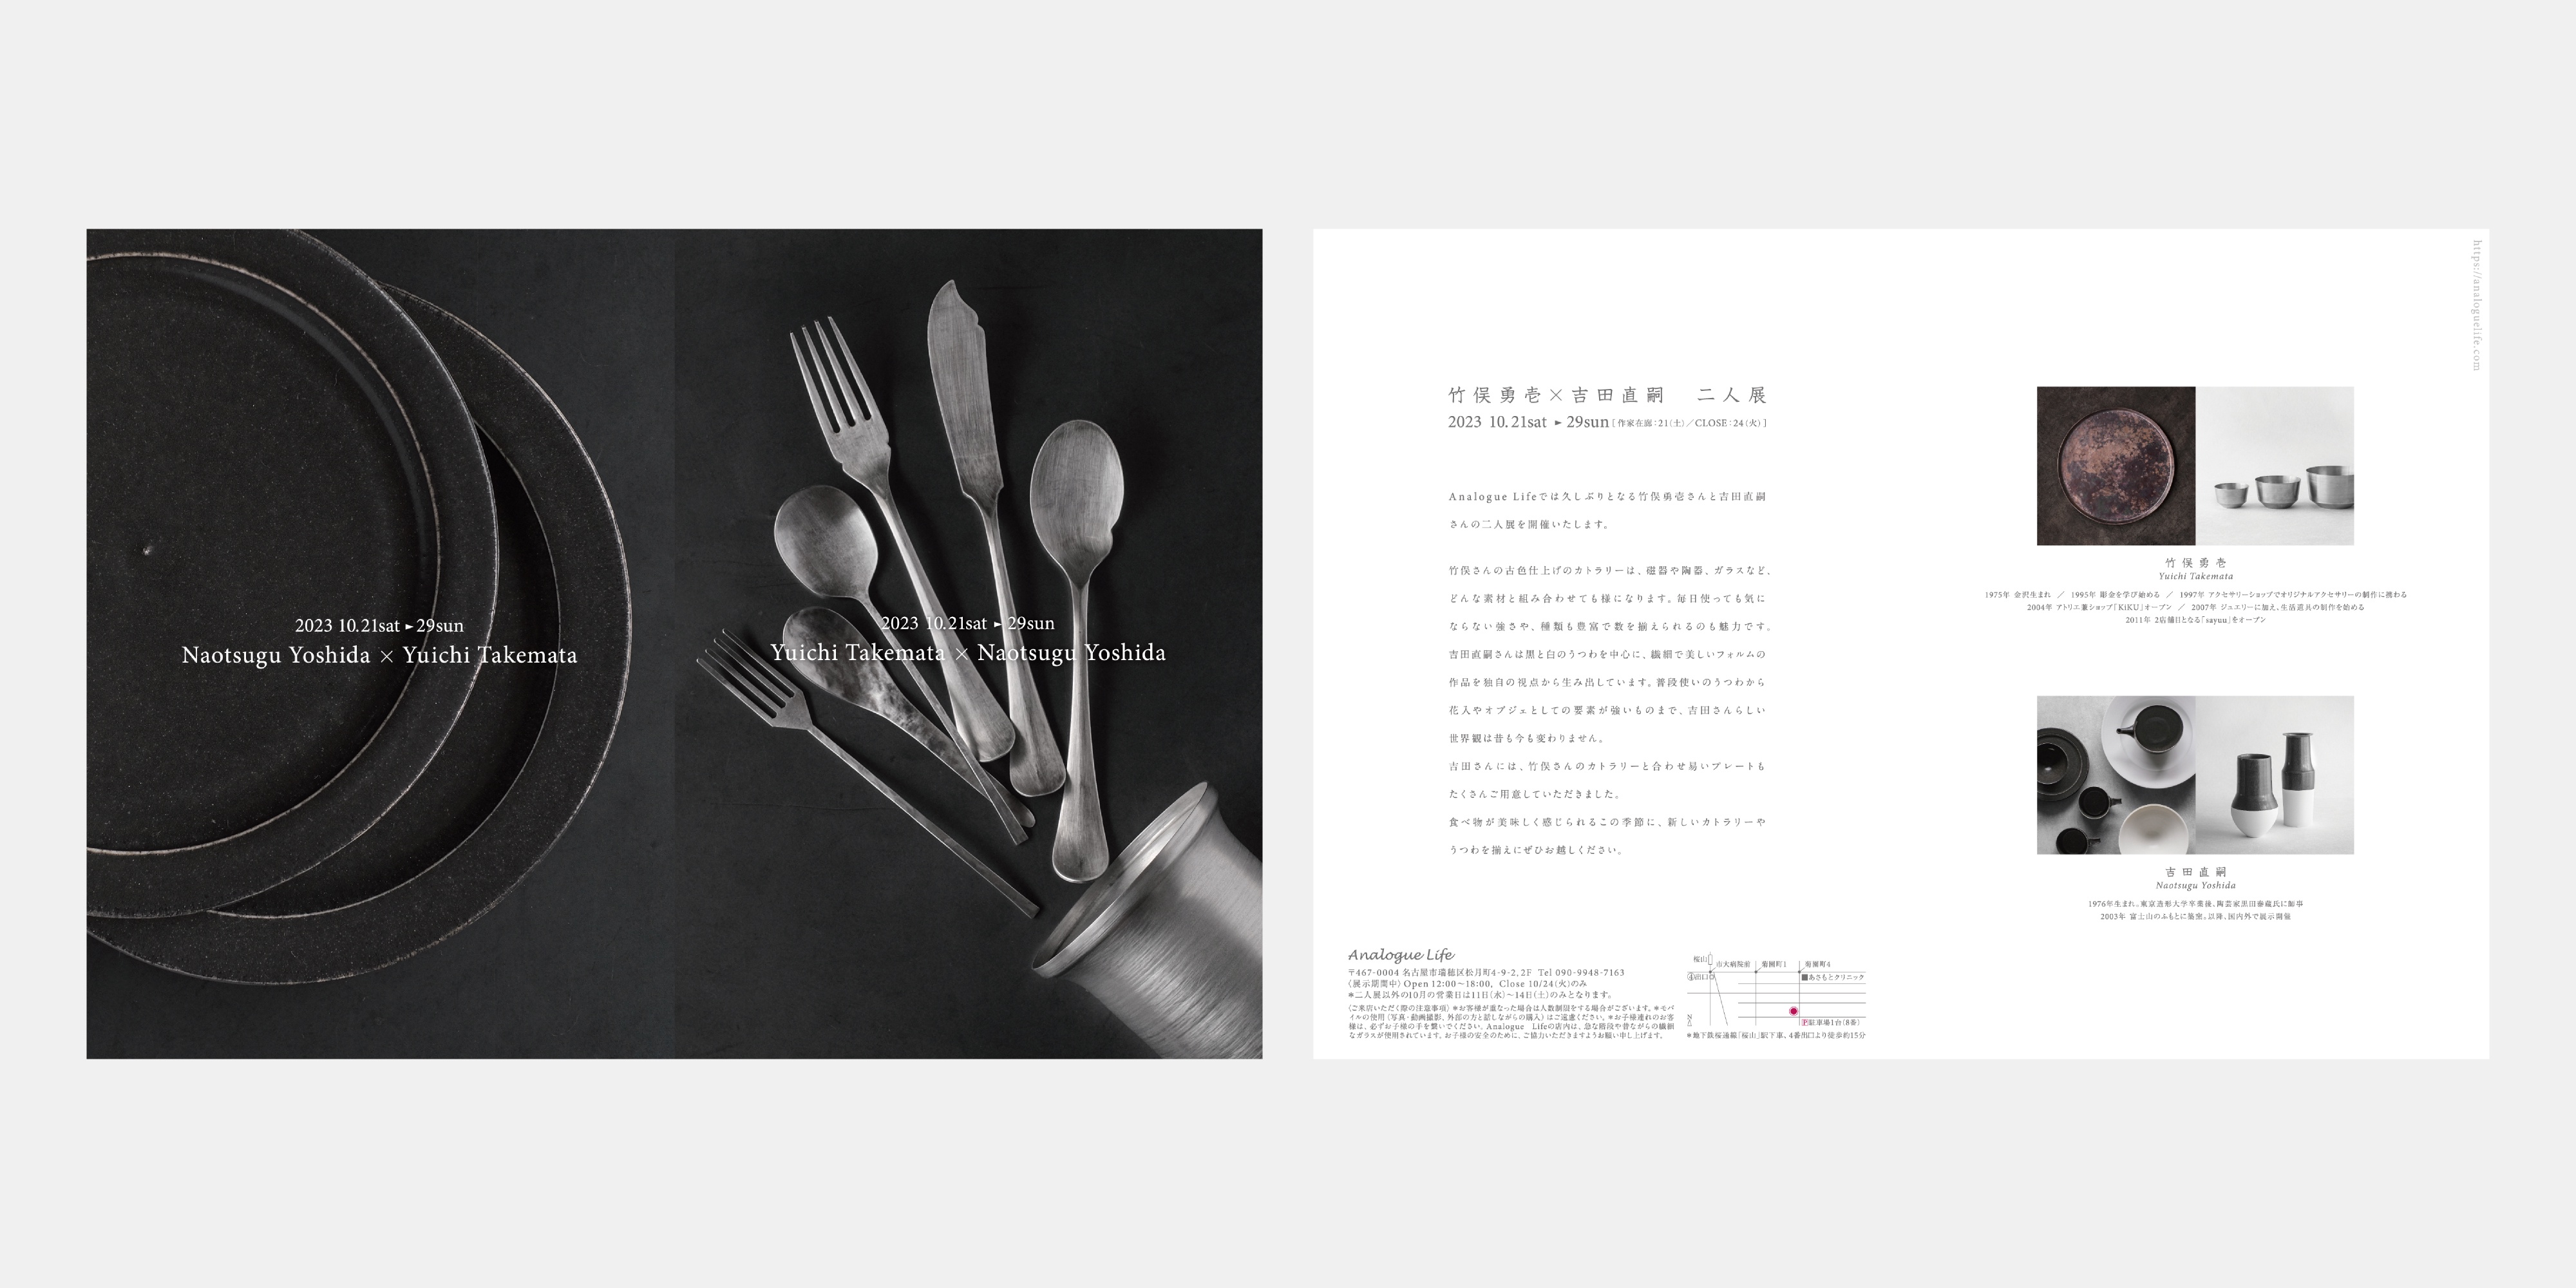 Yuichi Takemata × Naotsugu Yoshida Exhibition